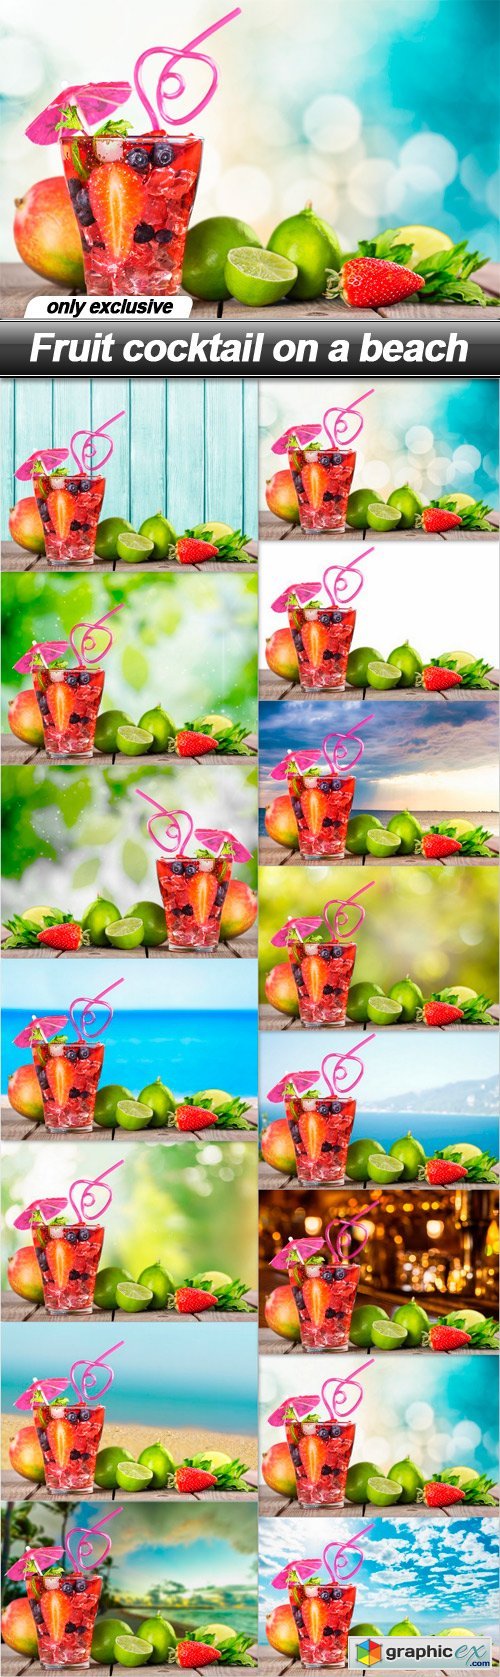 Fruit cocktail on a beach - 15 UHQ JPEG